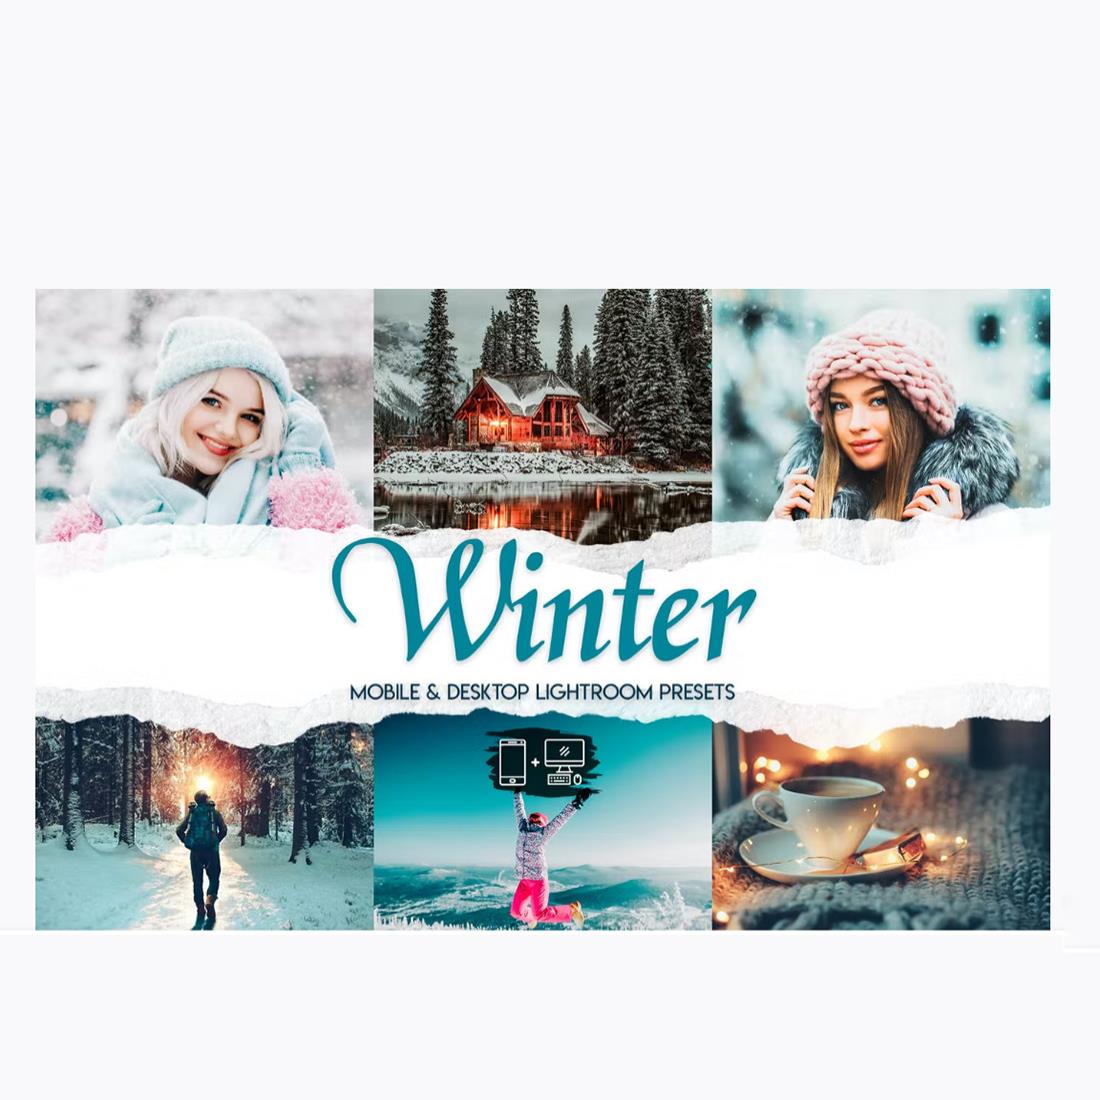 15 Winter Lightroom Mobile & Desktop Presets cover image.